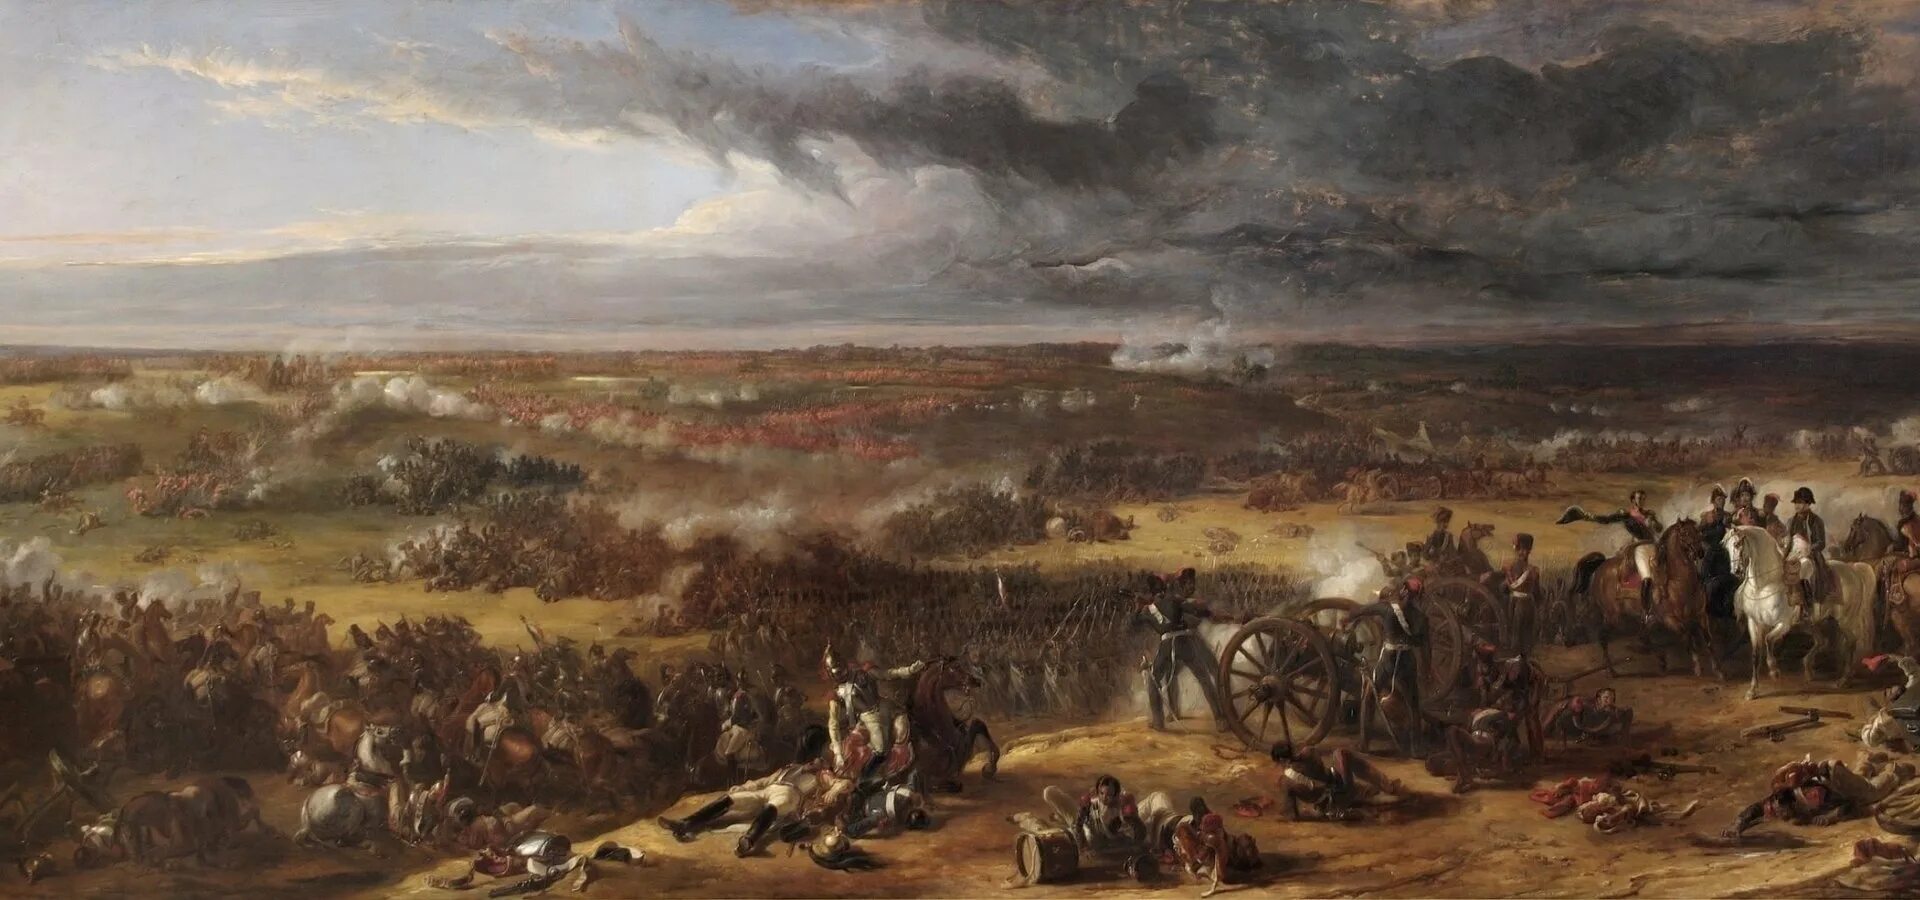 Поле сражения предложения. Наполеон битва Ватерлоо. Наполеон битва Ватерлоо художник. Наполеон Бонапарт 1815. Ватерлоо битва картины.